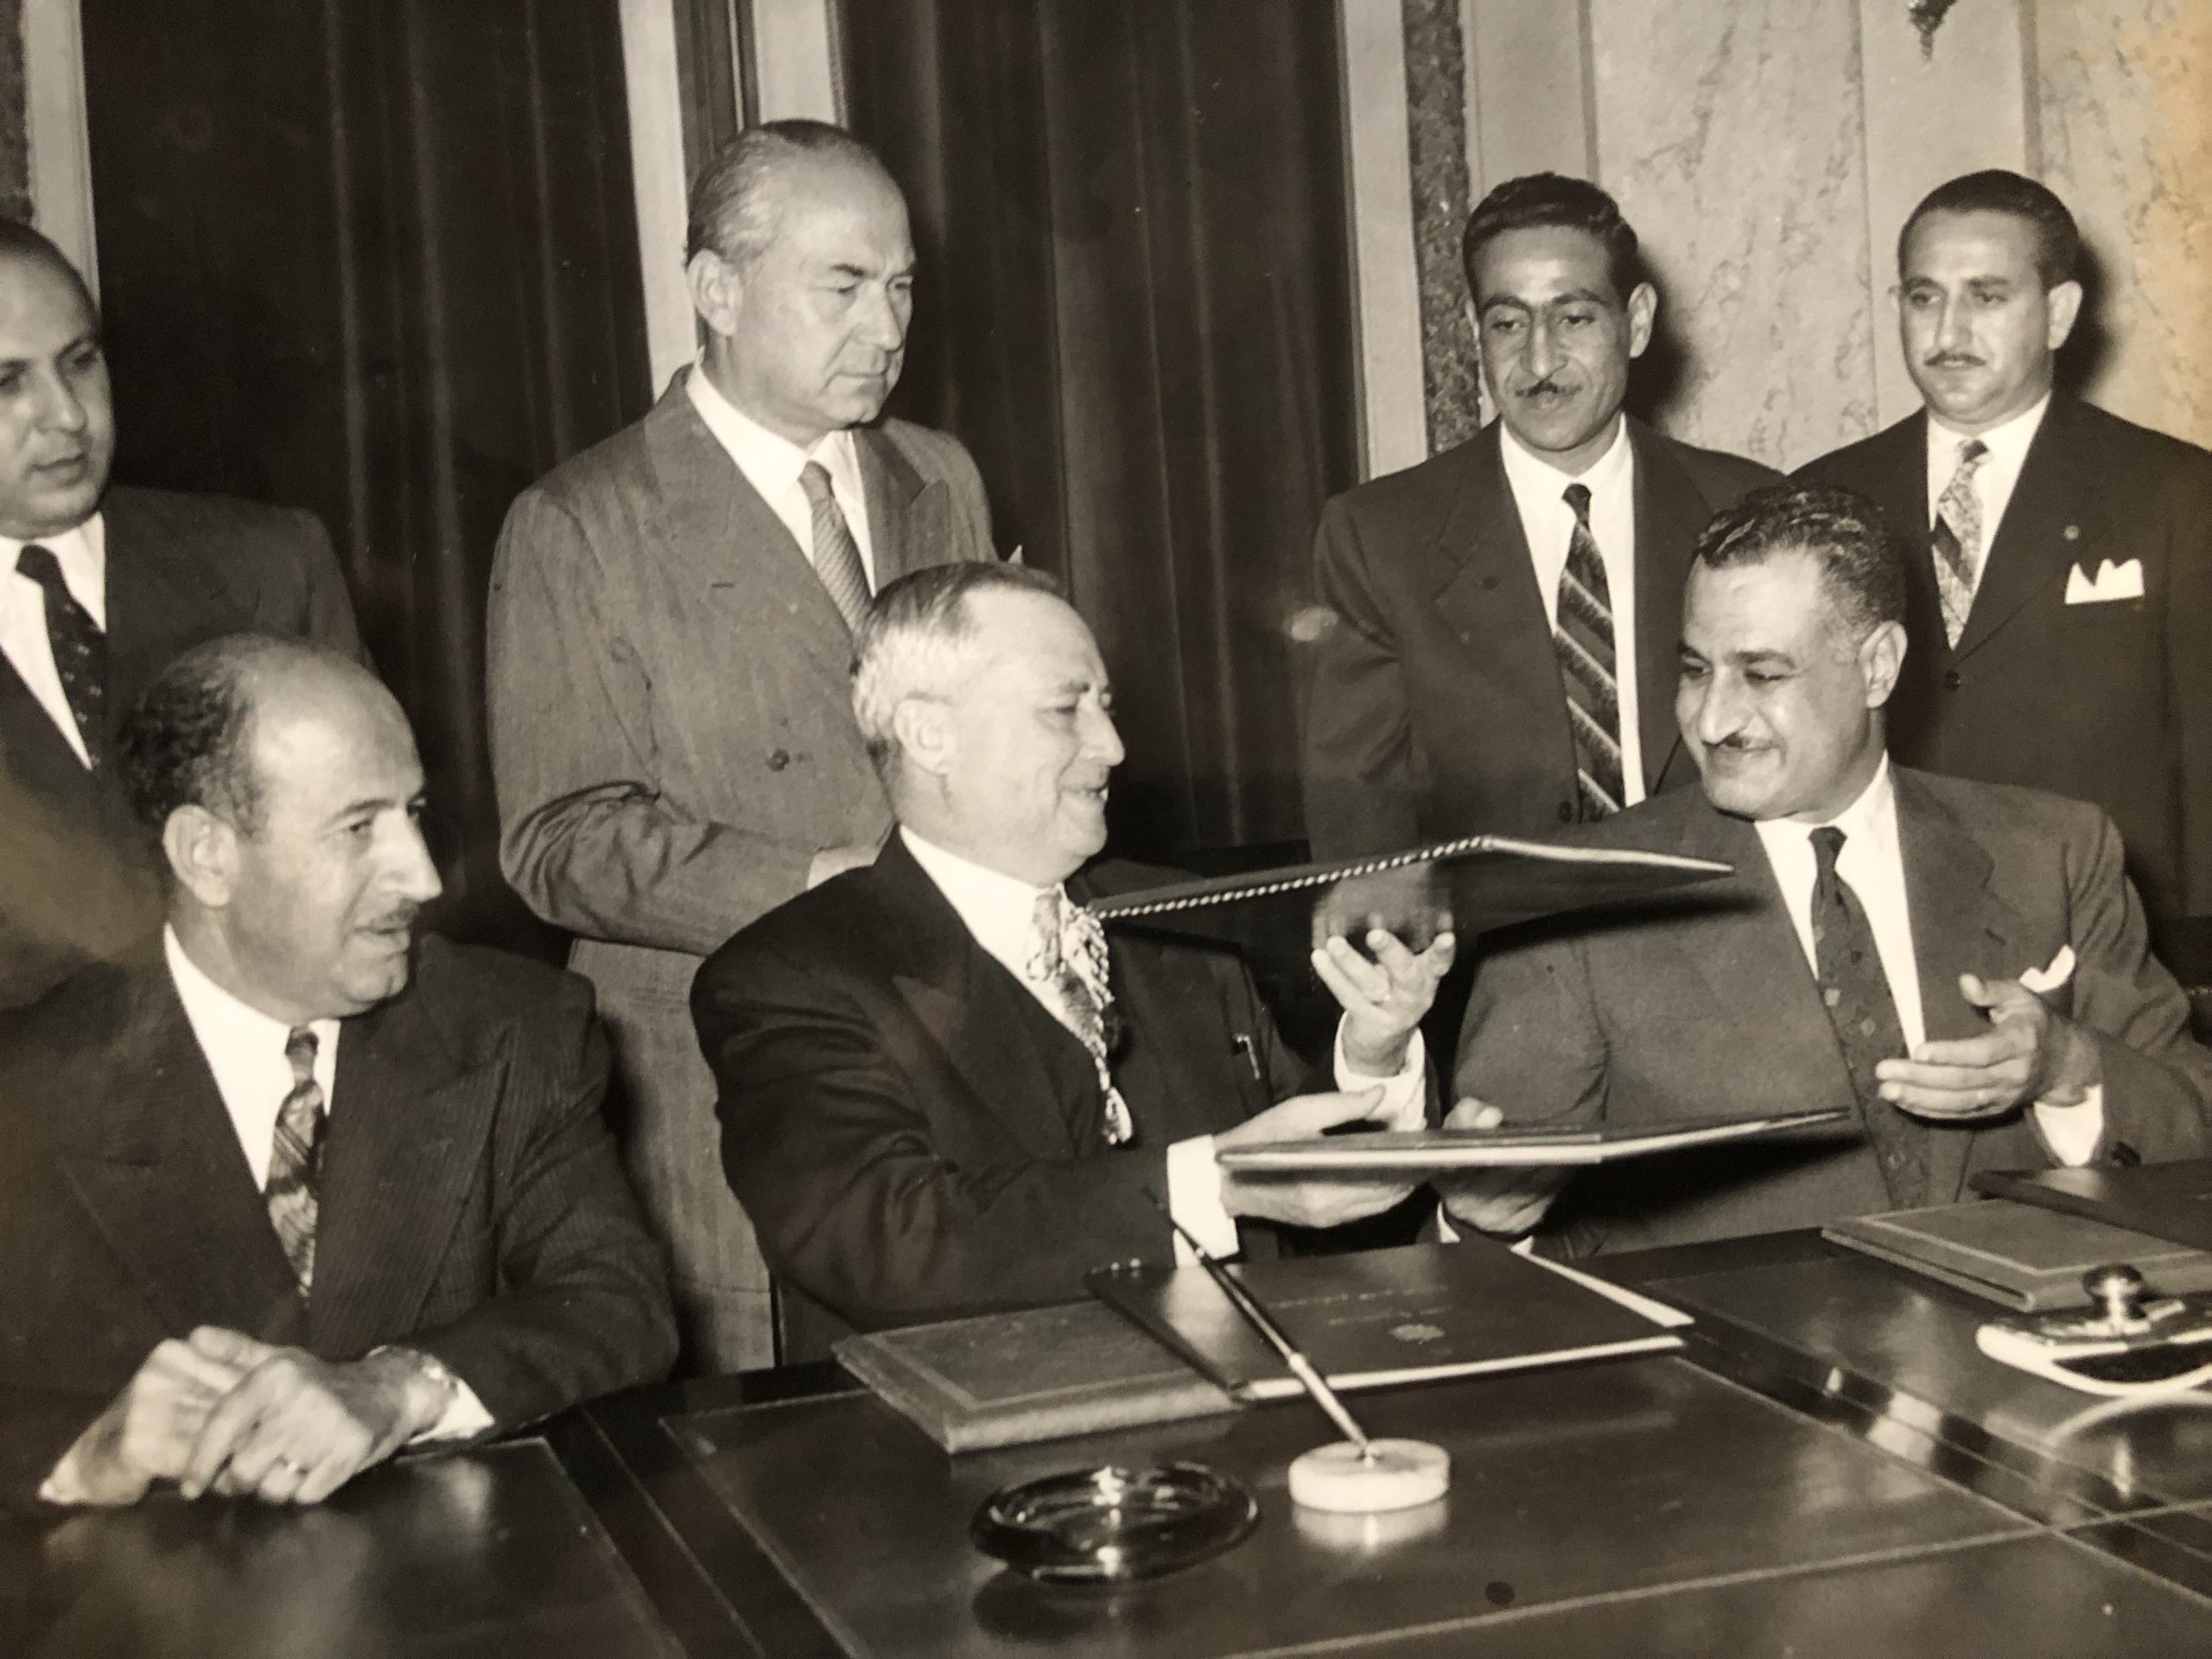 التاريخ السوري المعاصر - جمال عبد الناصر وسعيد الغزي يوقعان اتفاق القيادة المشتركة عام 1955 (3)